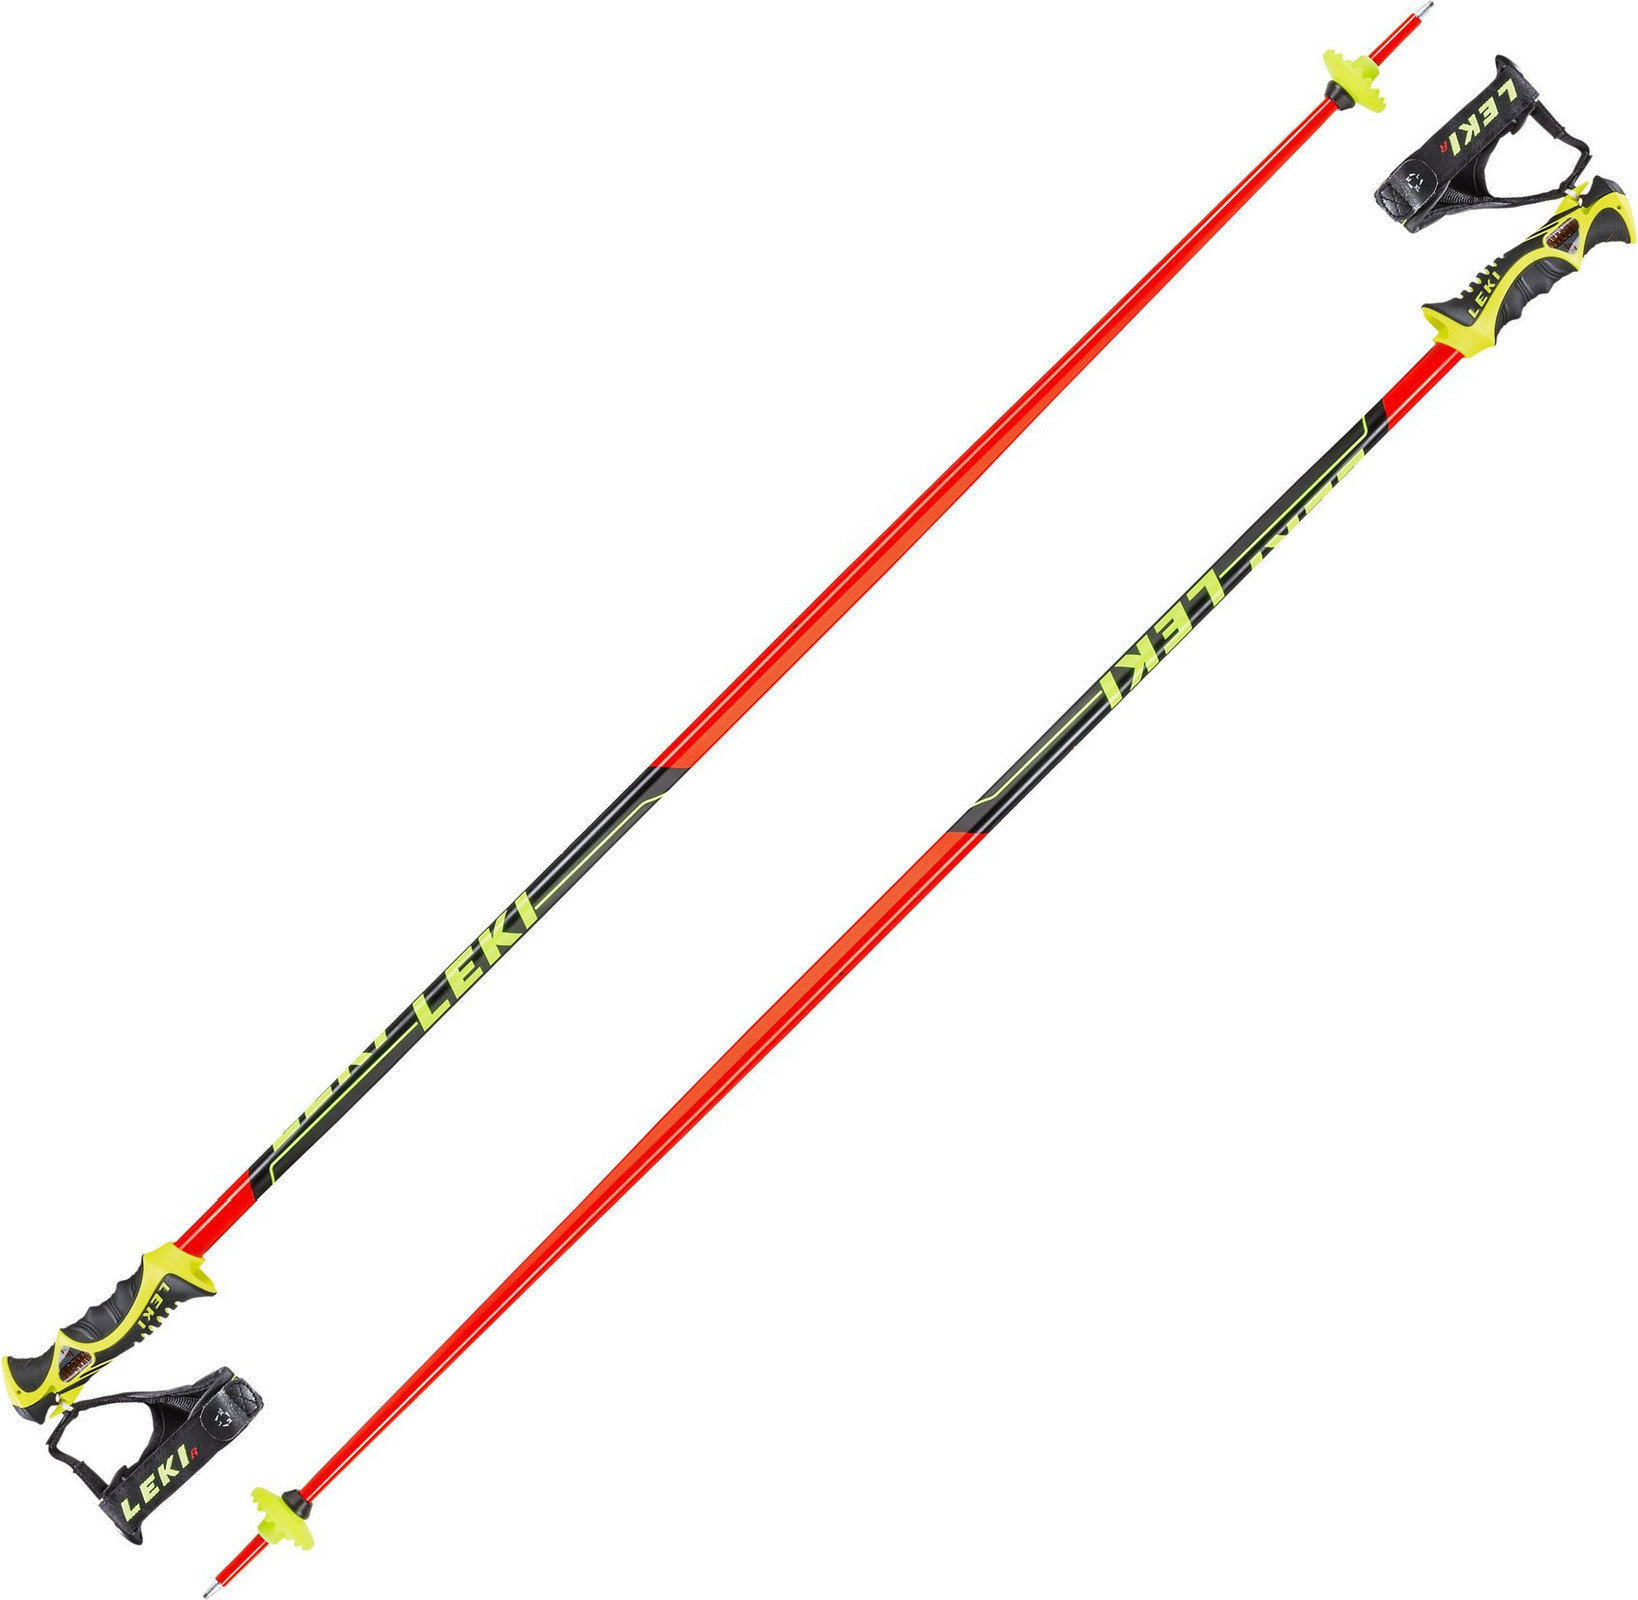 Bețe de schi Leki Worldcup Racing SL Neonred/Black/White/Yellow 125 cm Bețe de schi